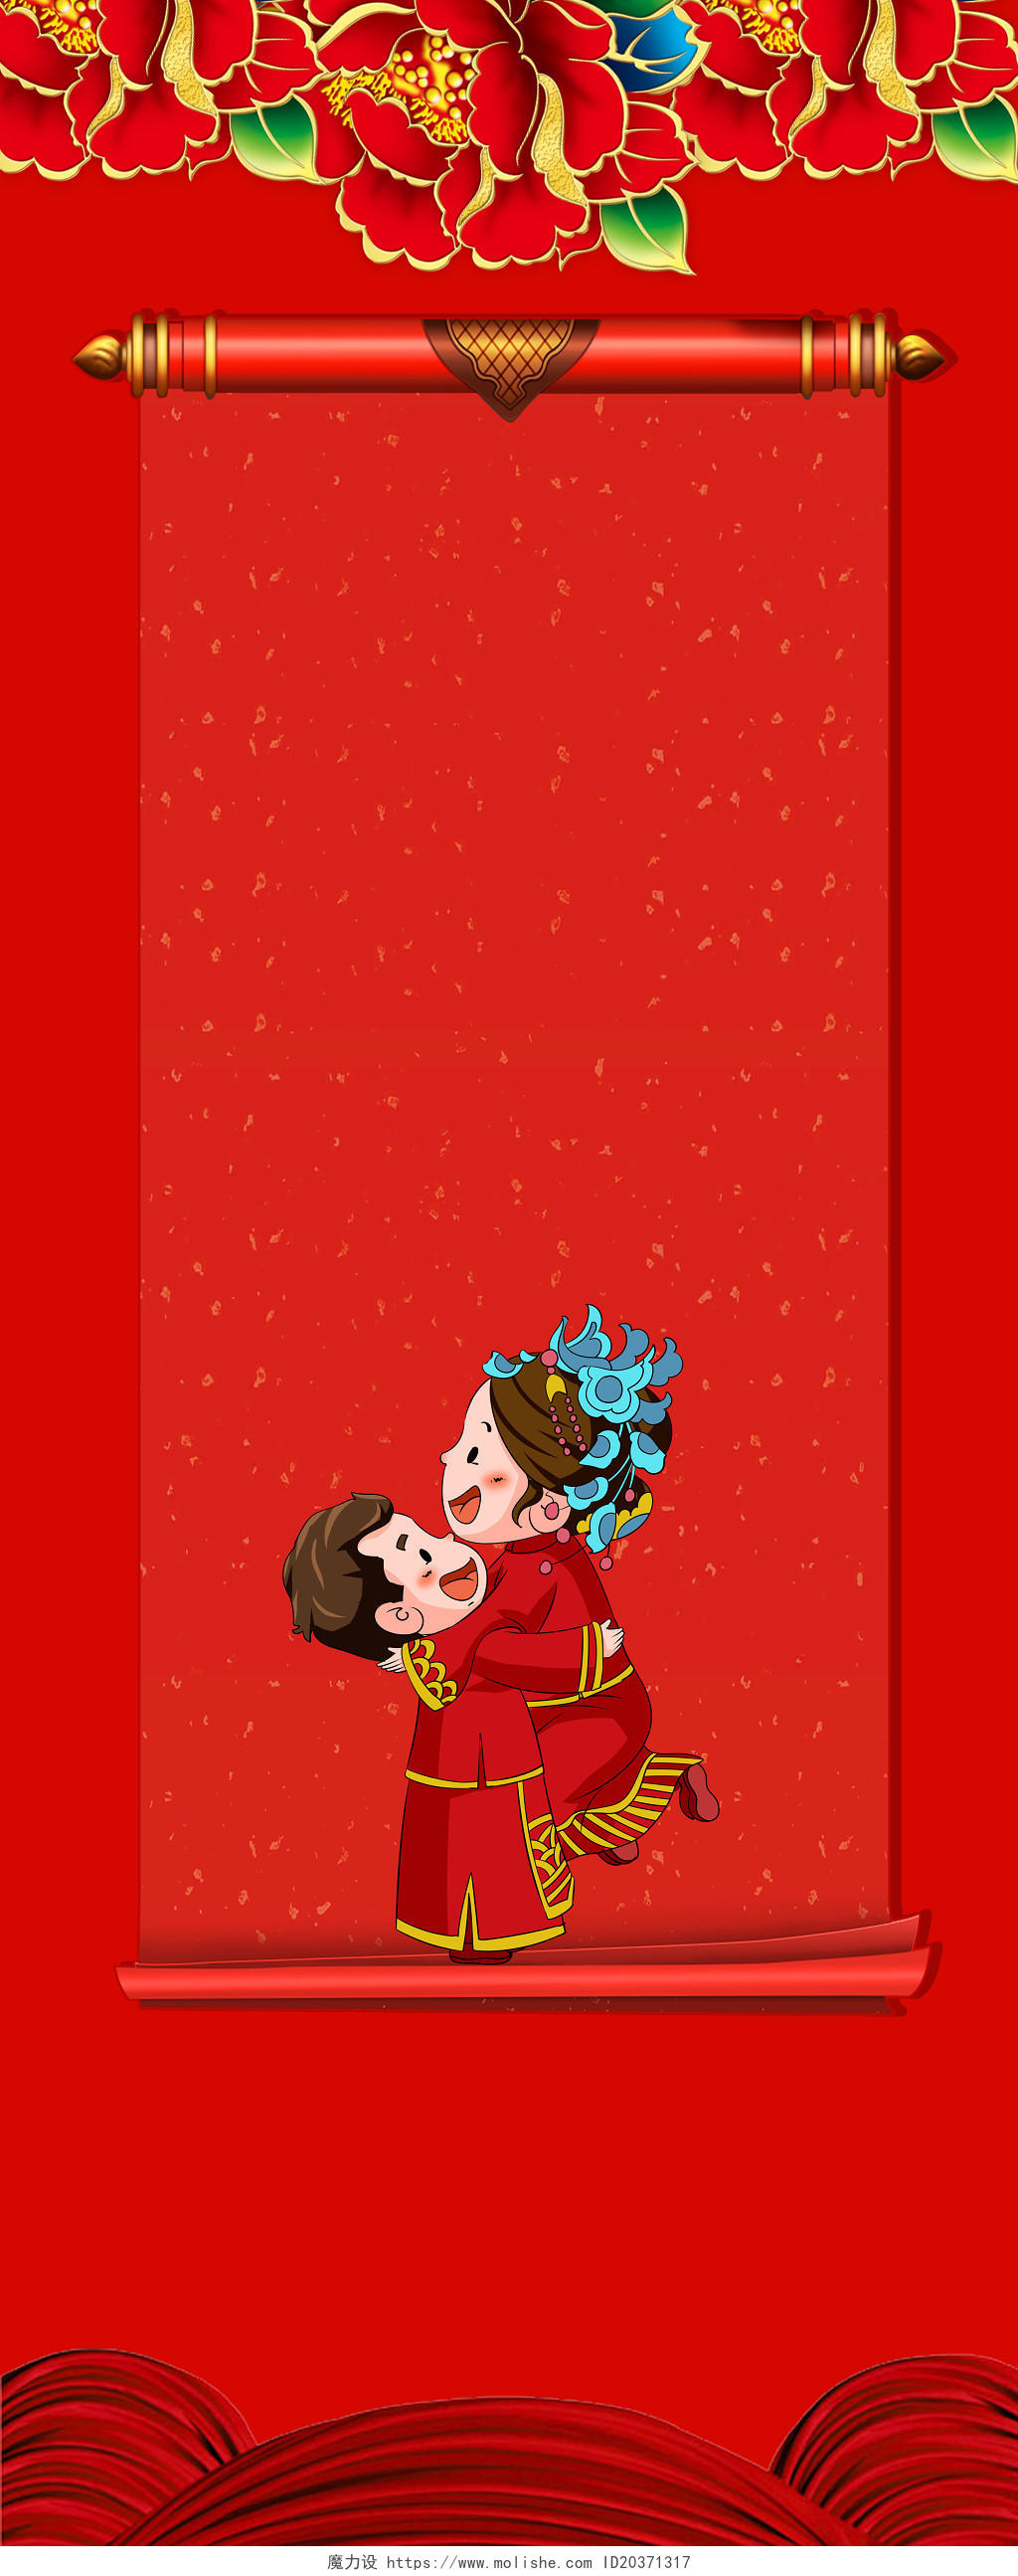 中式红色喜庆婚礼易拉宝背景